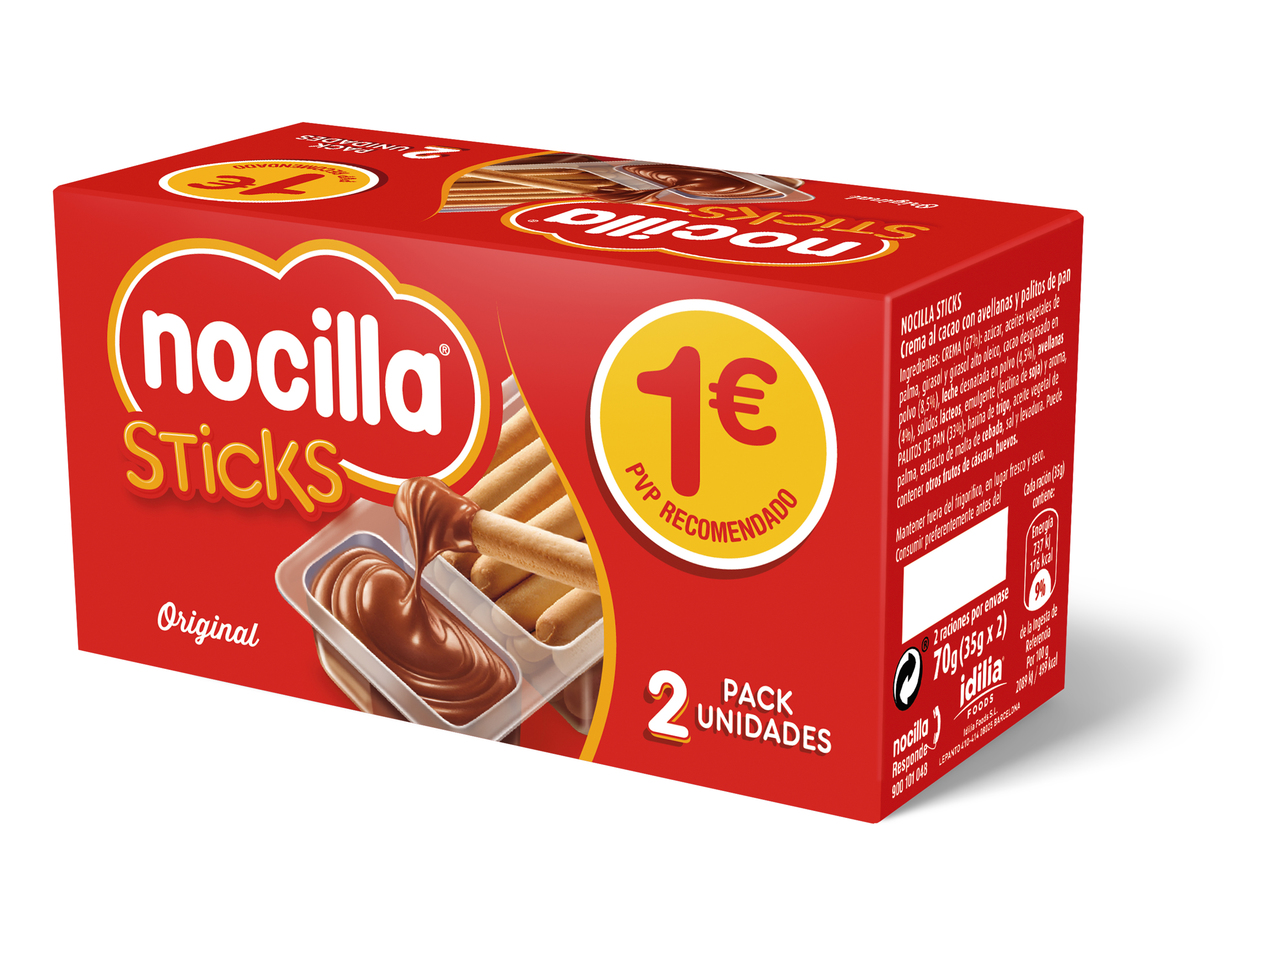 "Nocilla" Nocilla sticks